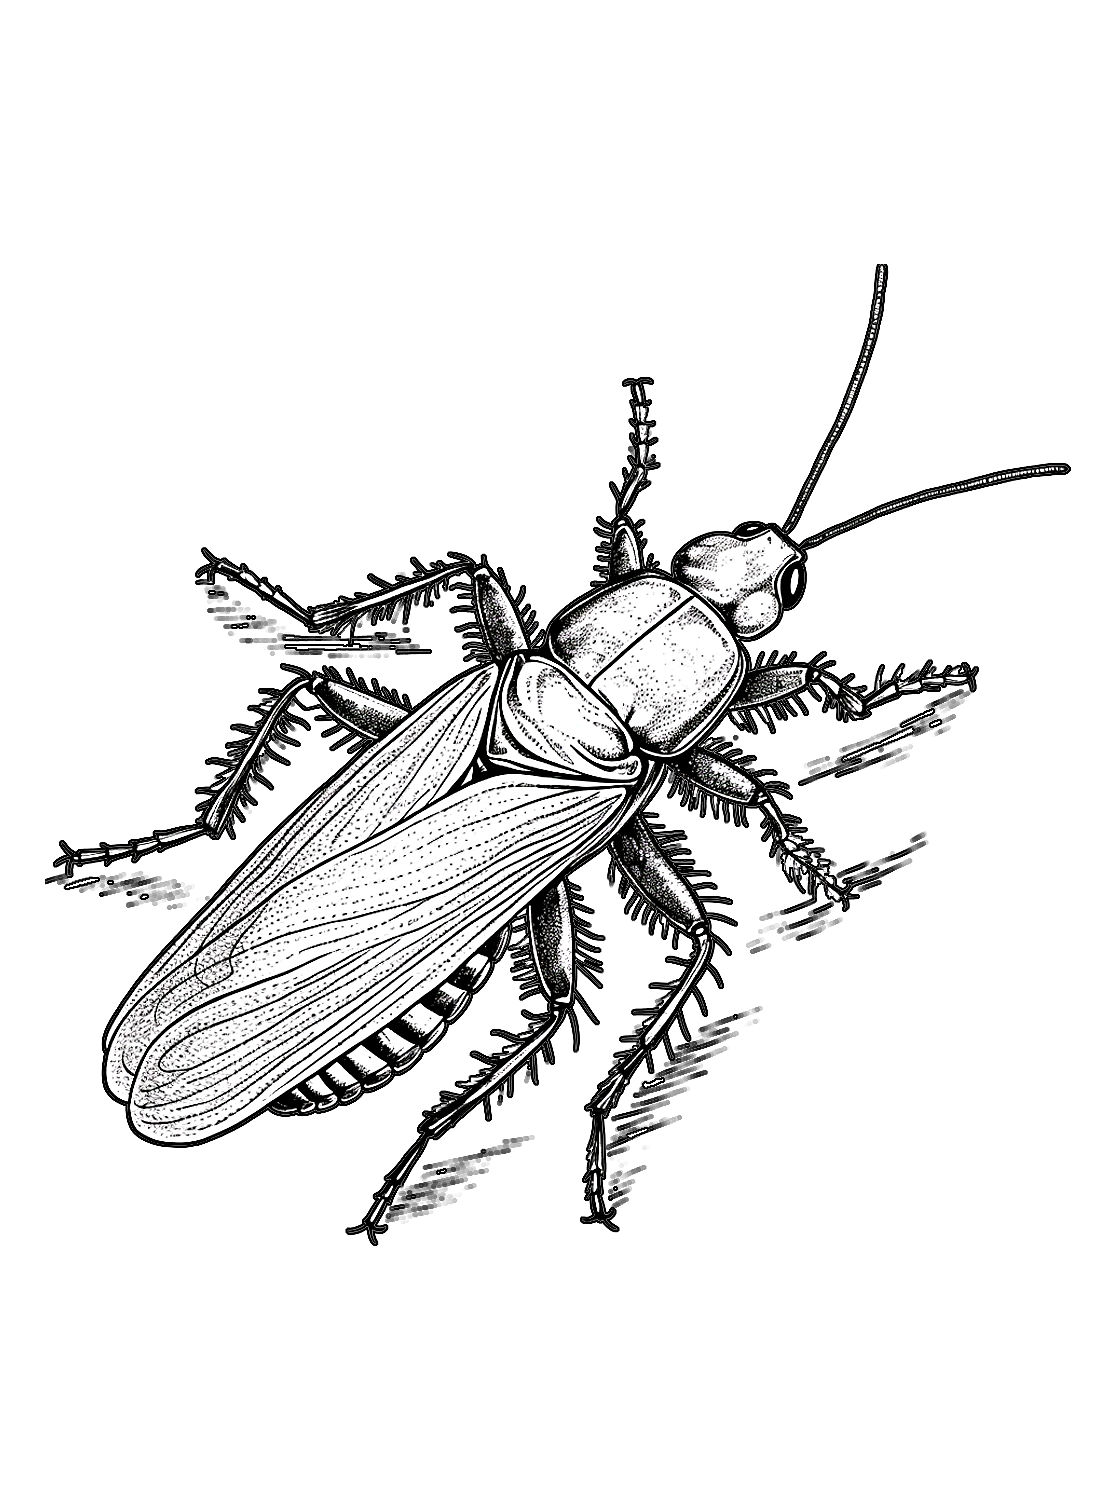 Una cucaracha relastica de Cockroach.